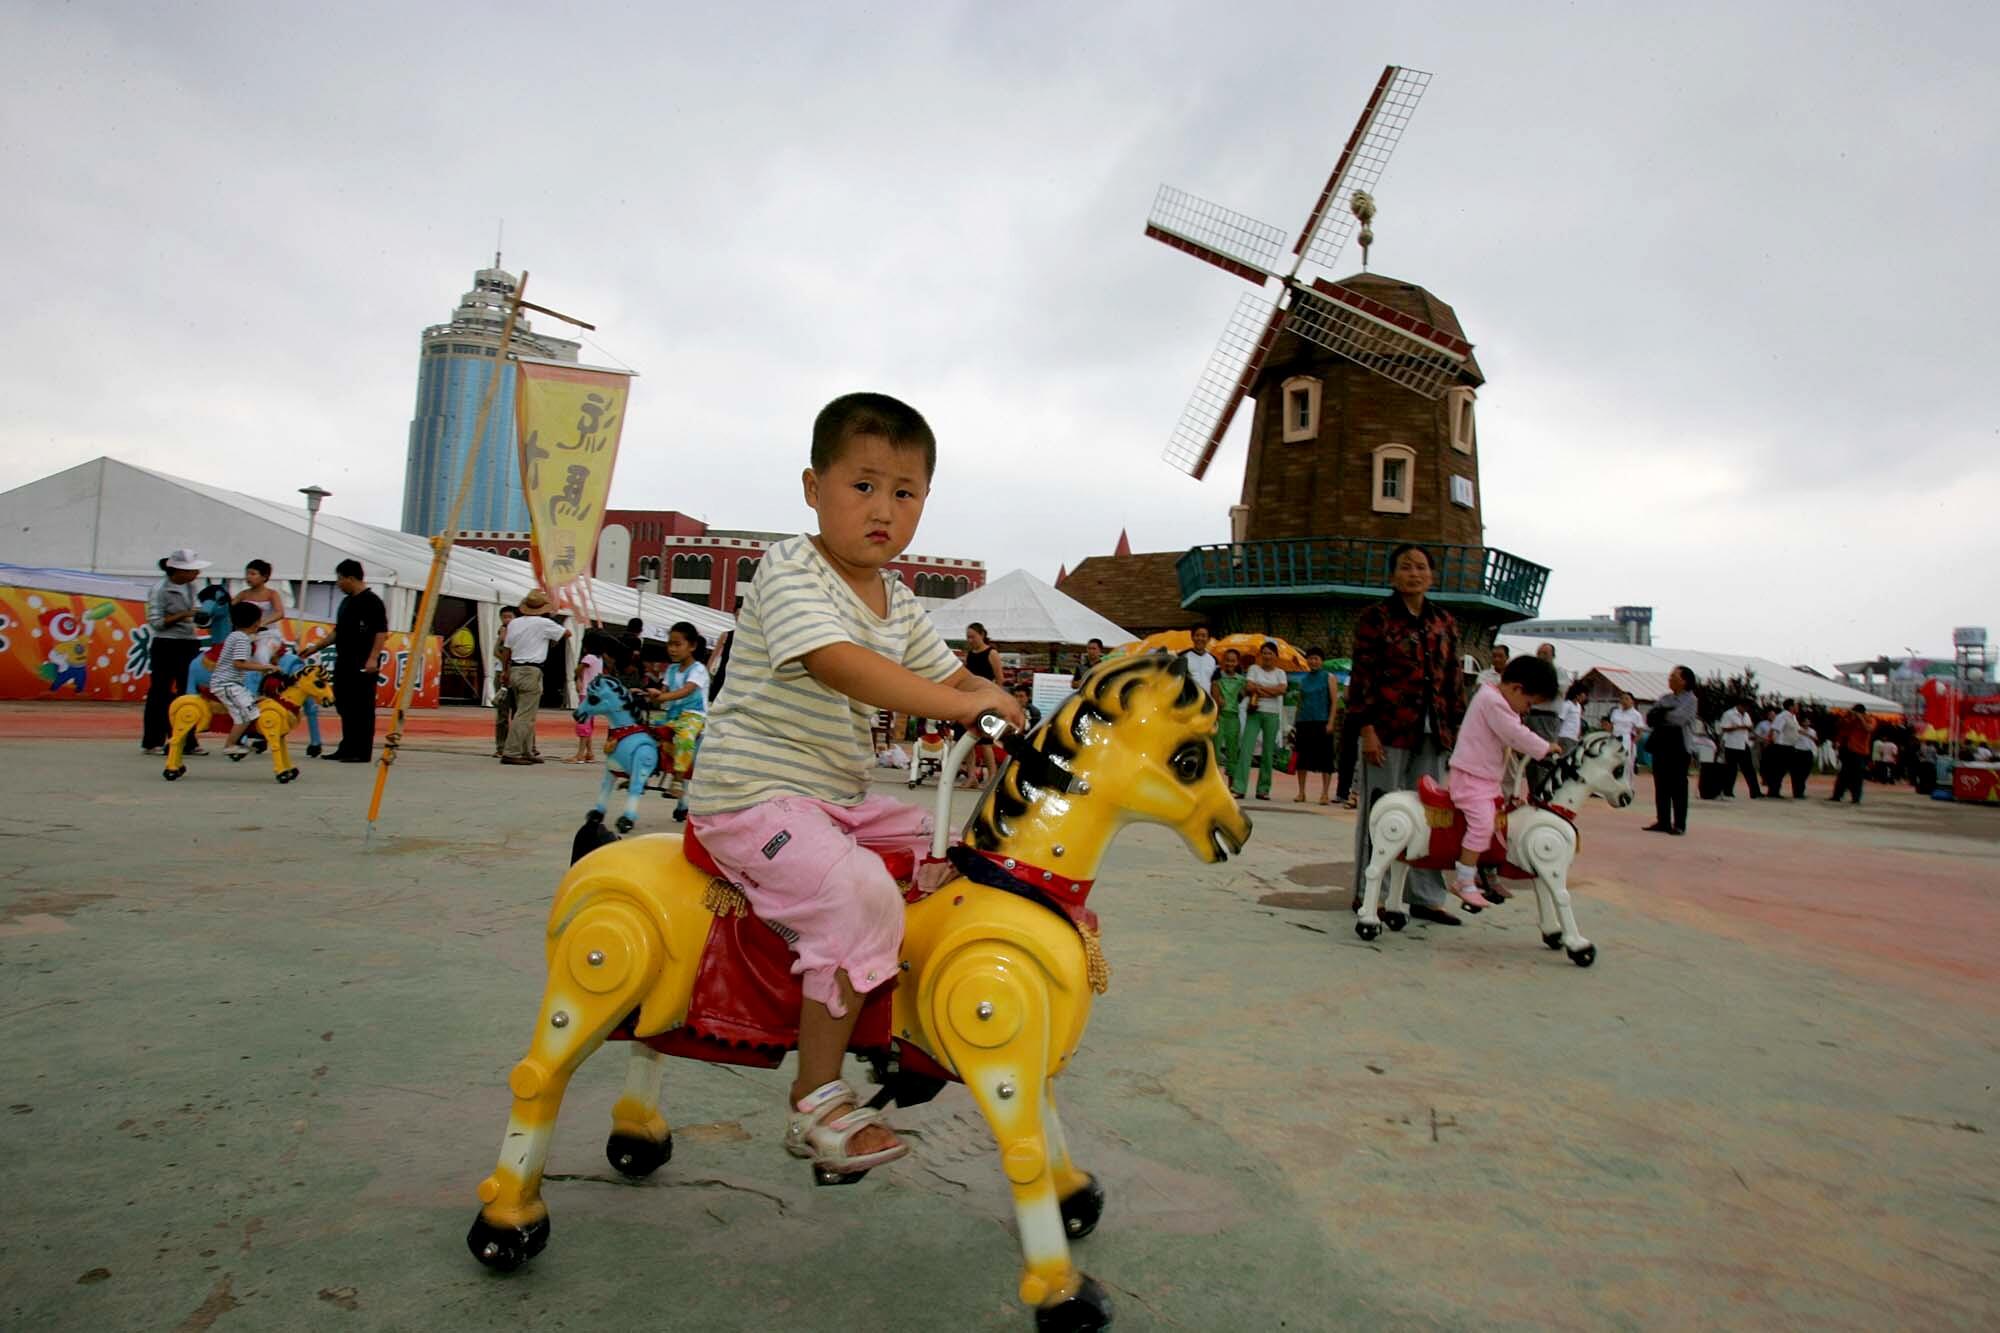 Uma criança monta um pônei de brinquedo amarelo em um parque com um moinho de vento 